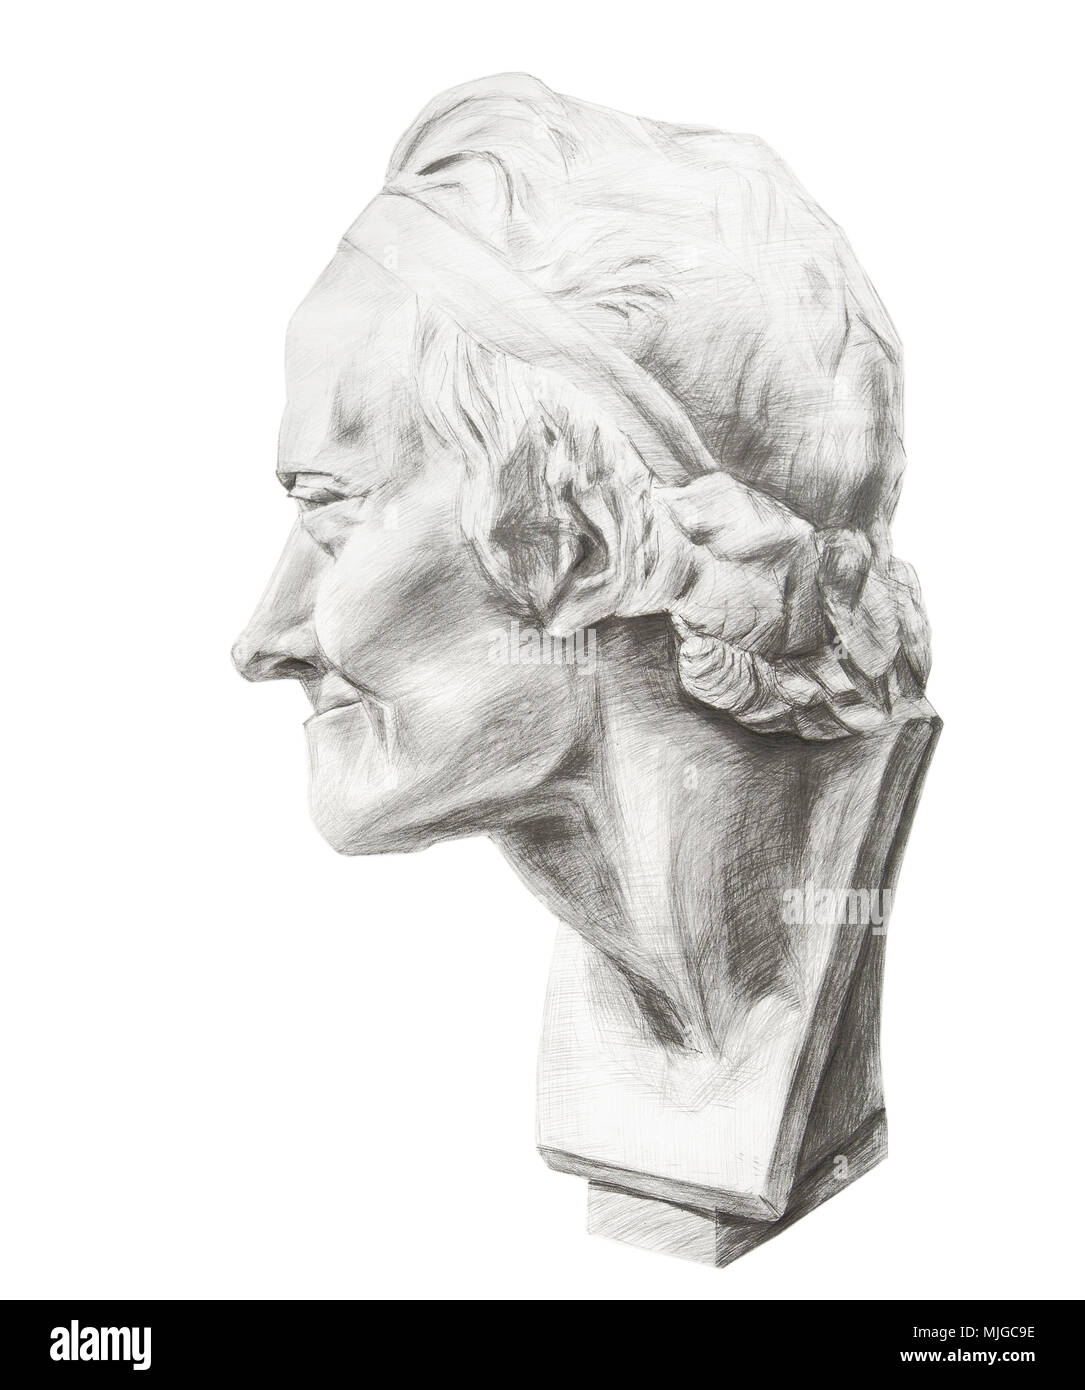 Dimensions de la tête de plâtre de Voltaire. Tête de Voltaire dans le profil. Sculpture de gypse du philosophe Voltaire Banque D'Images